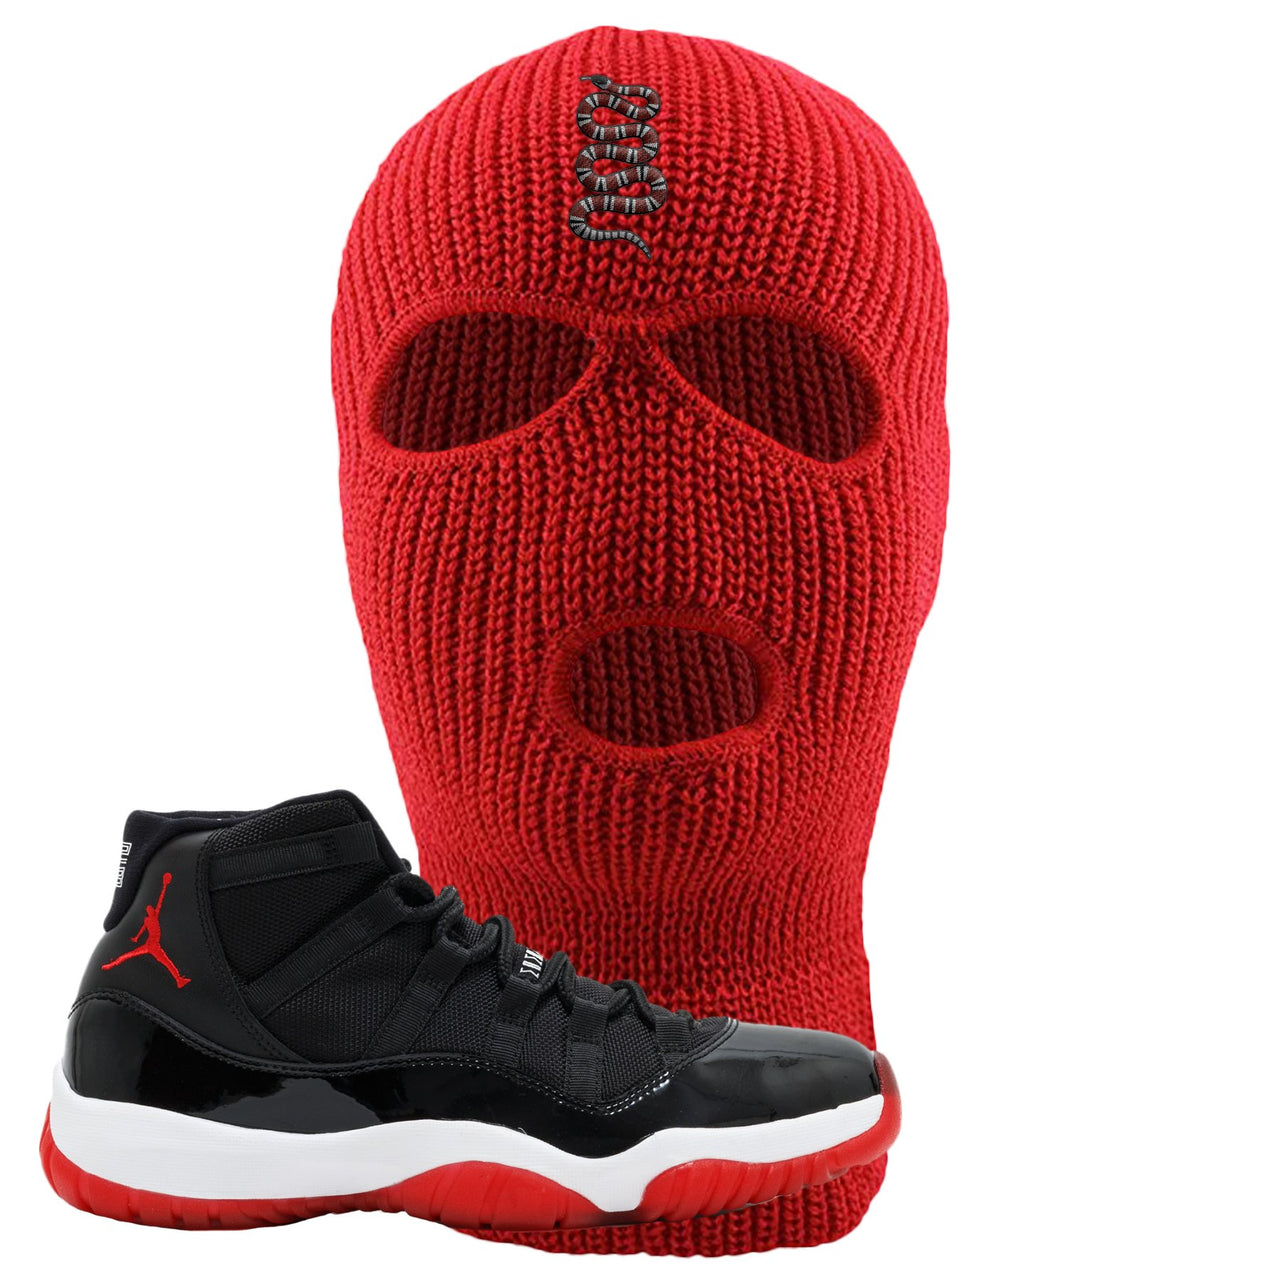 Jordan 11 Bred Coiled Snake Red Sneaker Matching Ski Mask